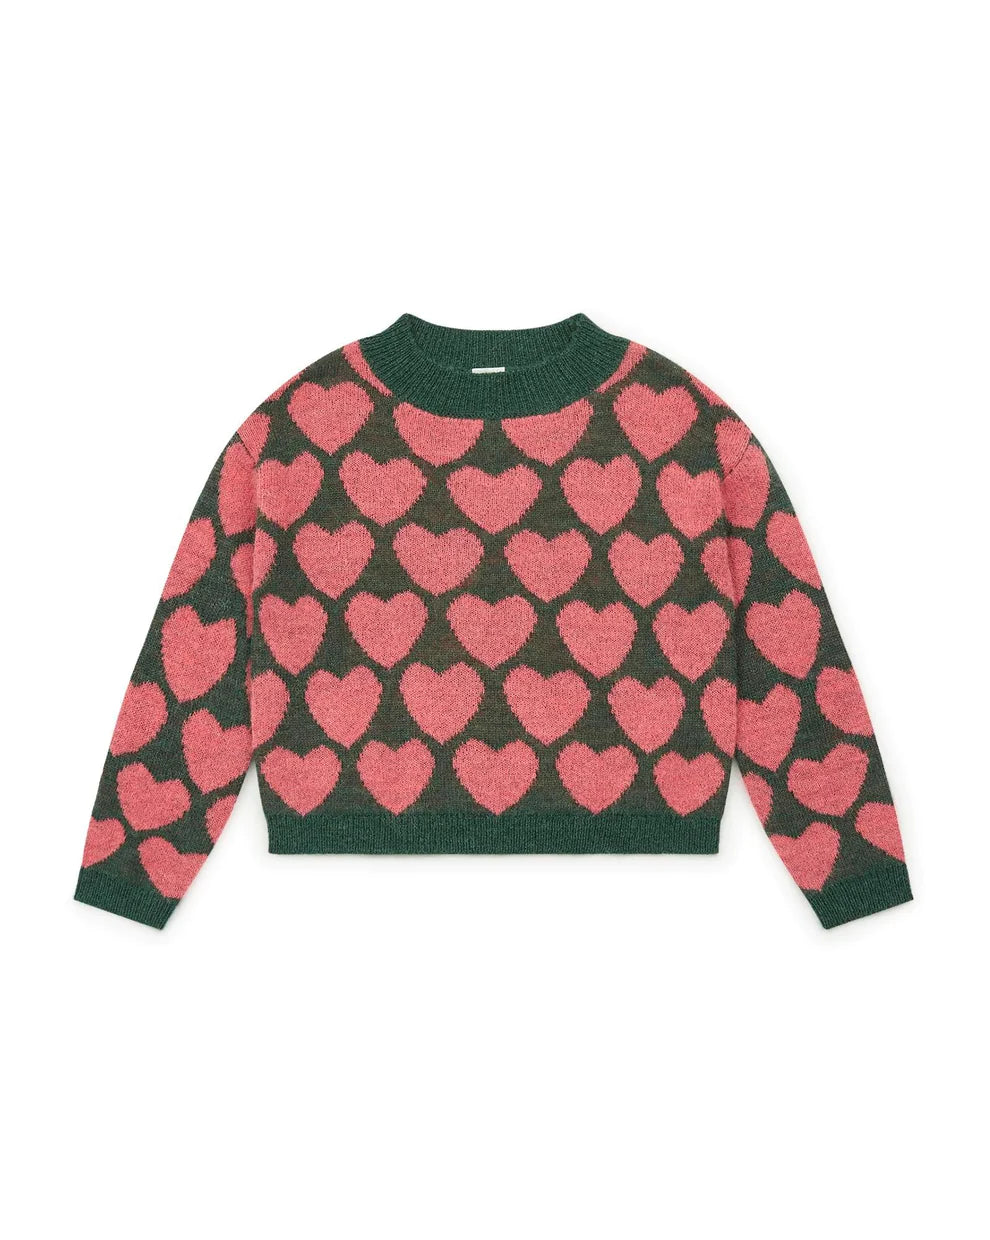 Lovely Knit Hearts Sweater in Greenpeace